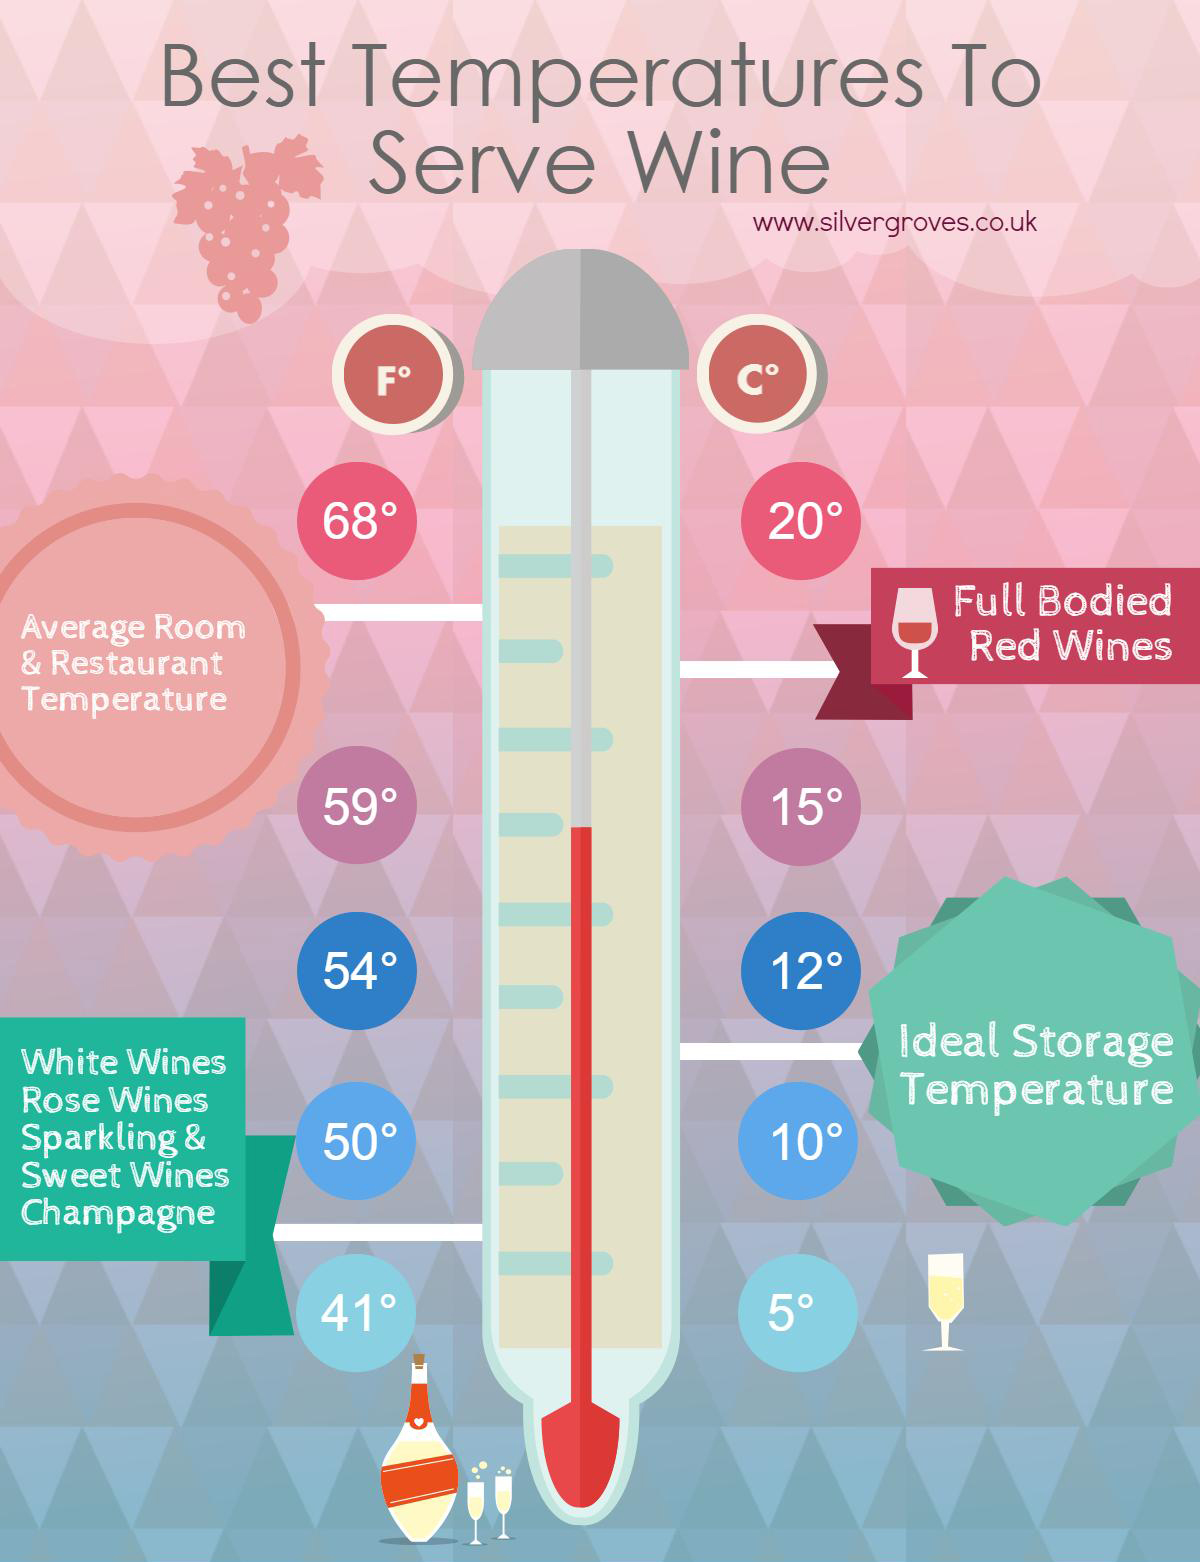 Temperatures to serve wine